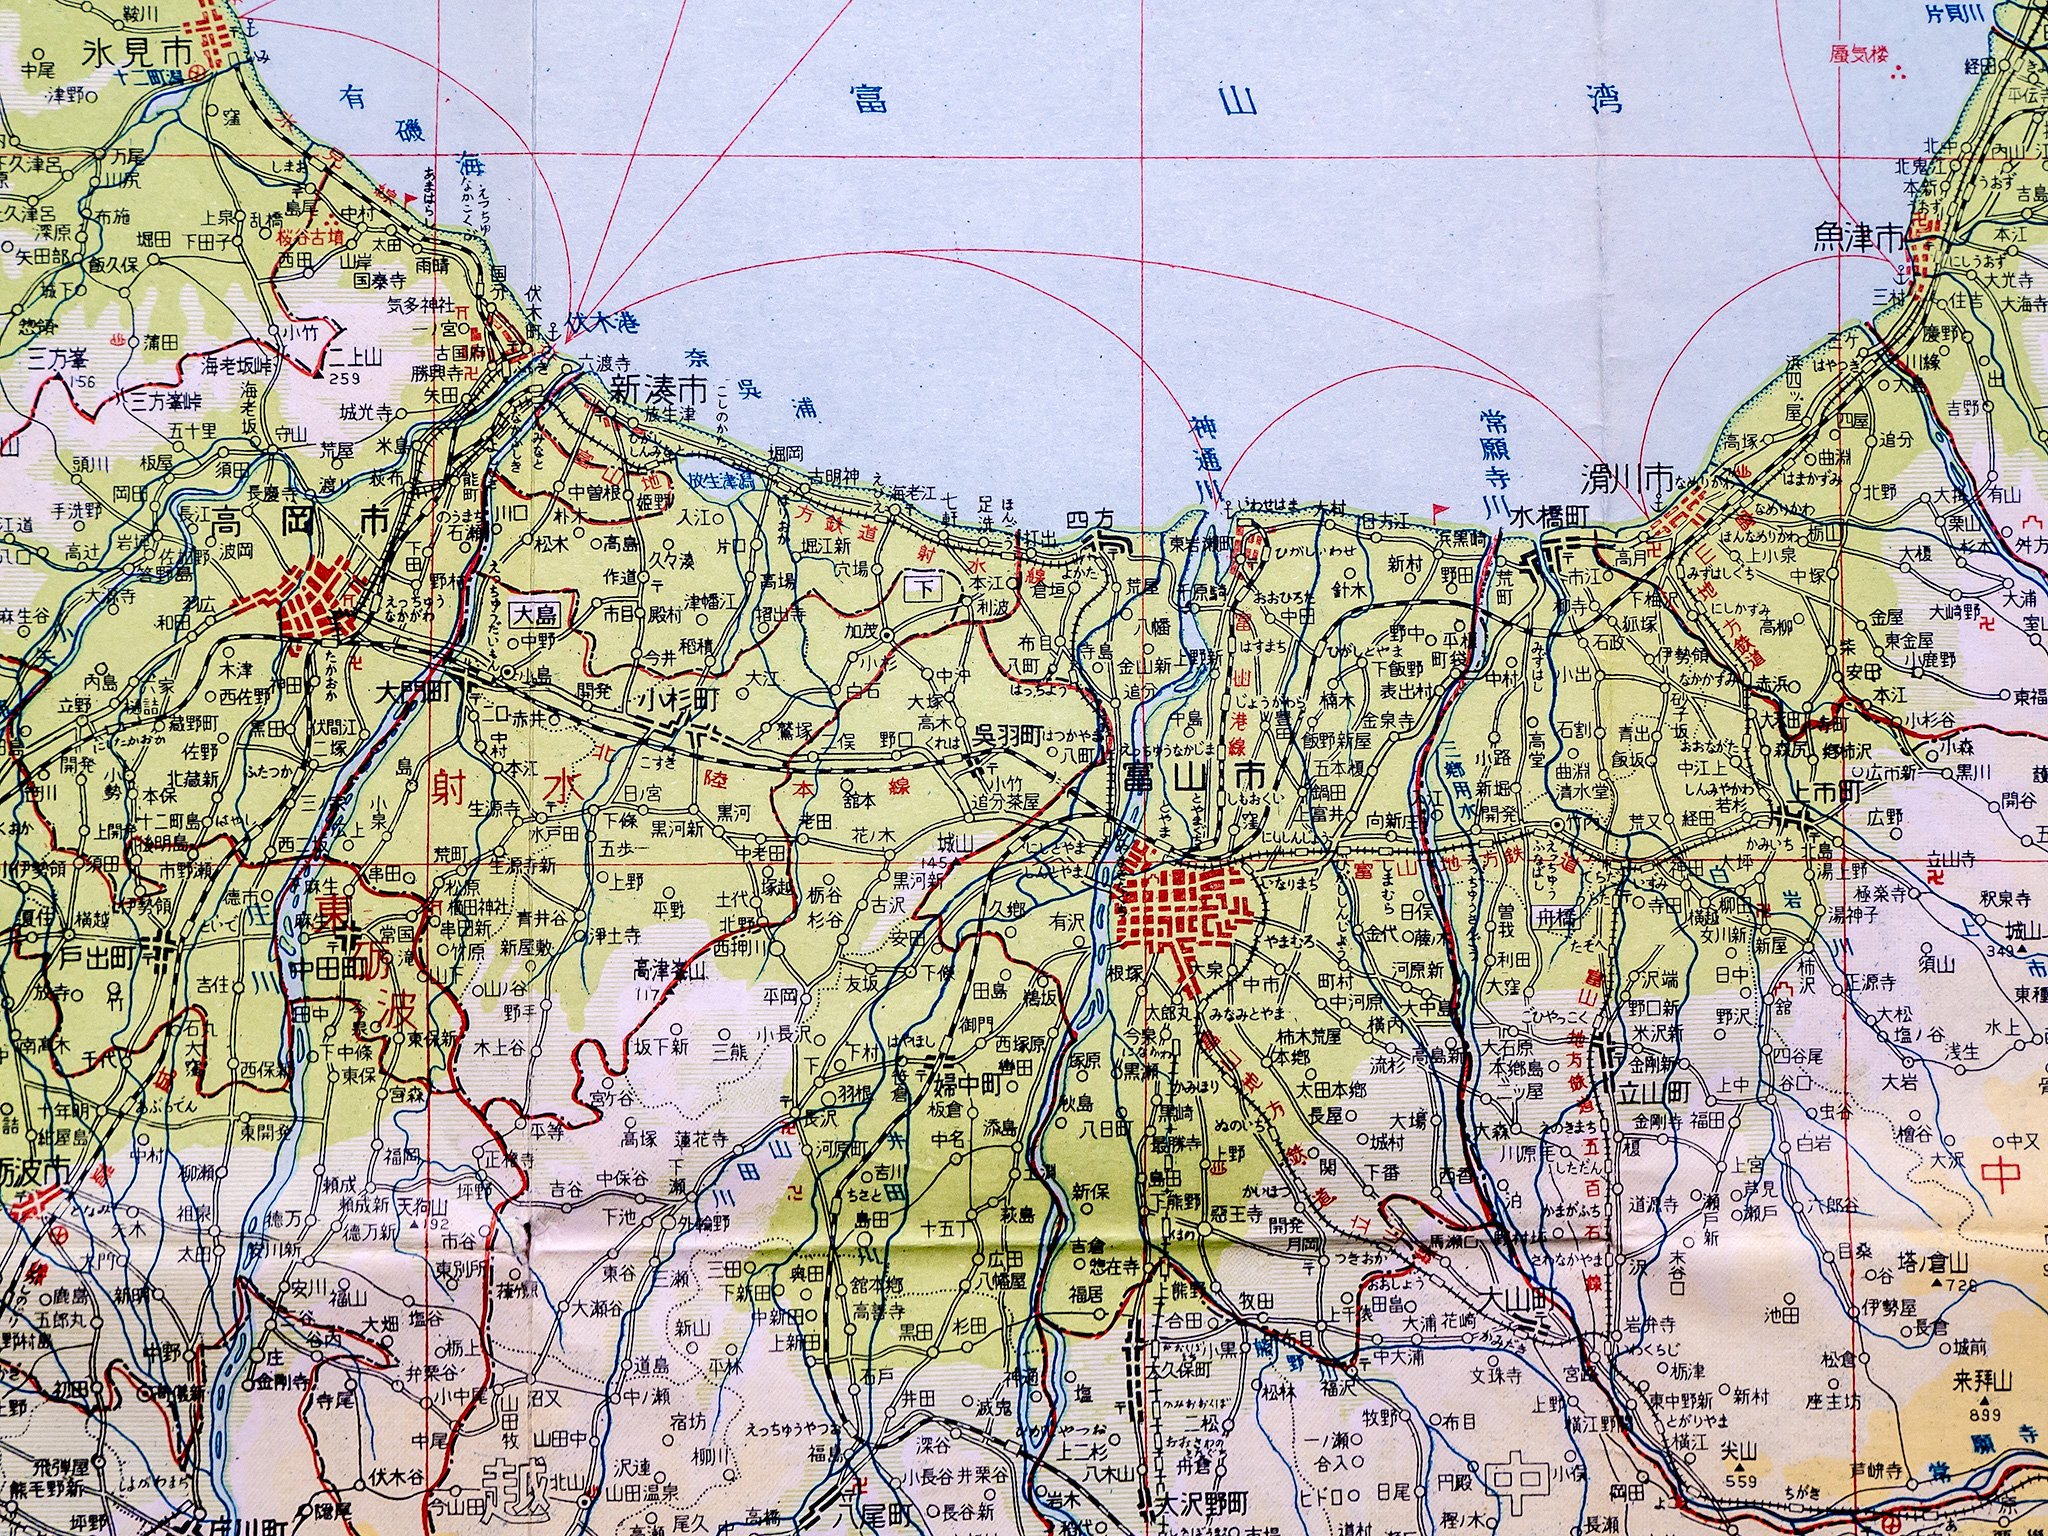 あたりめし 1960年代前半頃の富山県の地図 その1 表面 1枚目は全体 2枚目は西部 3枚目は東部 4枚目は中央部 呉羽町の富山市への吸収合併前 かつ 小矢部市 石動町 砺中町 の誕生後なので 1962 1965年頃のものと思われます T Co